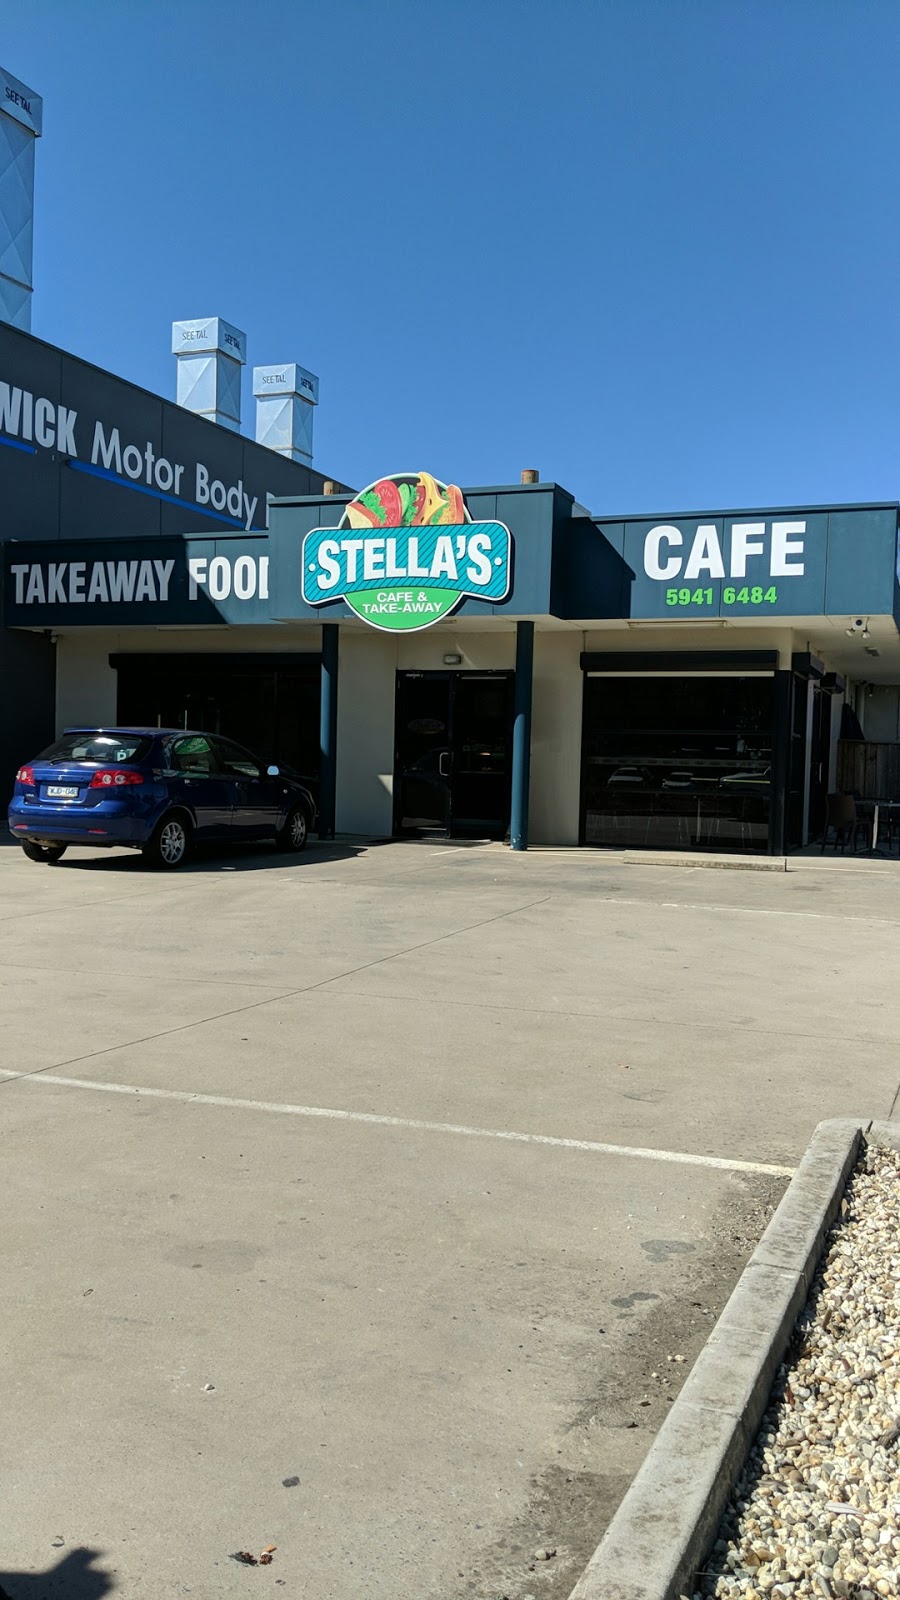 Stellas Cafe And Take-away | cafe | 2 Hogan Ct, Pakenham VIC 3810, Australia | 0359416484 OR +61 3 5941 6484